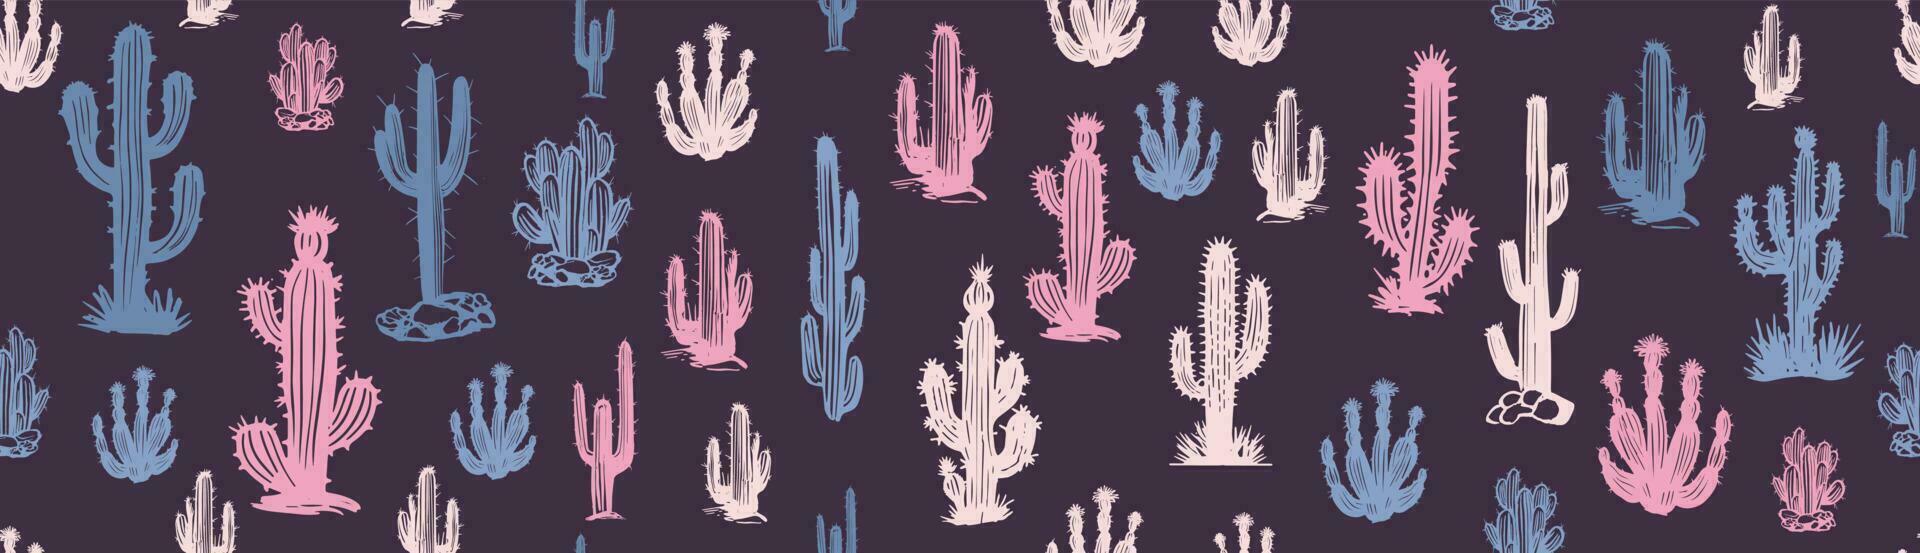 ensemble de cactus illustrations dessinées à la main, vecteur